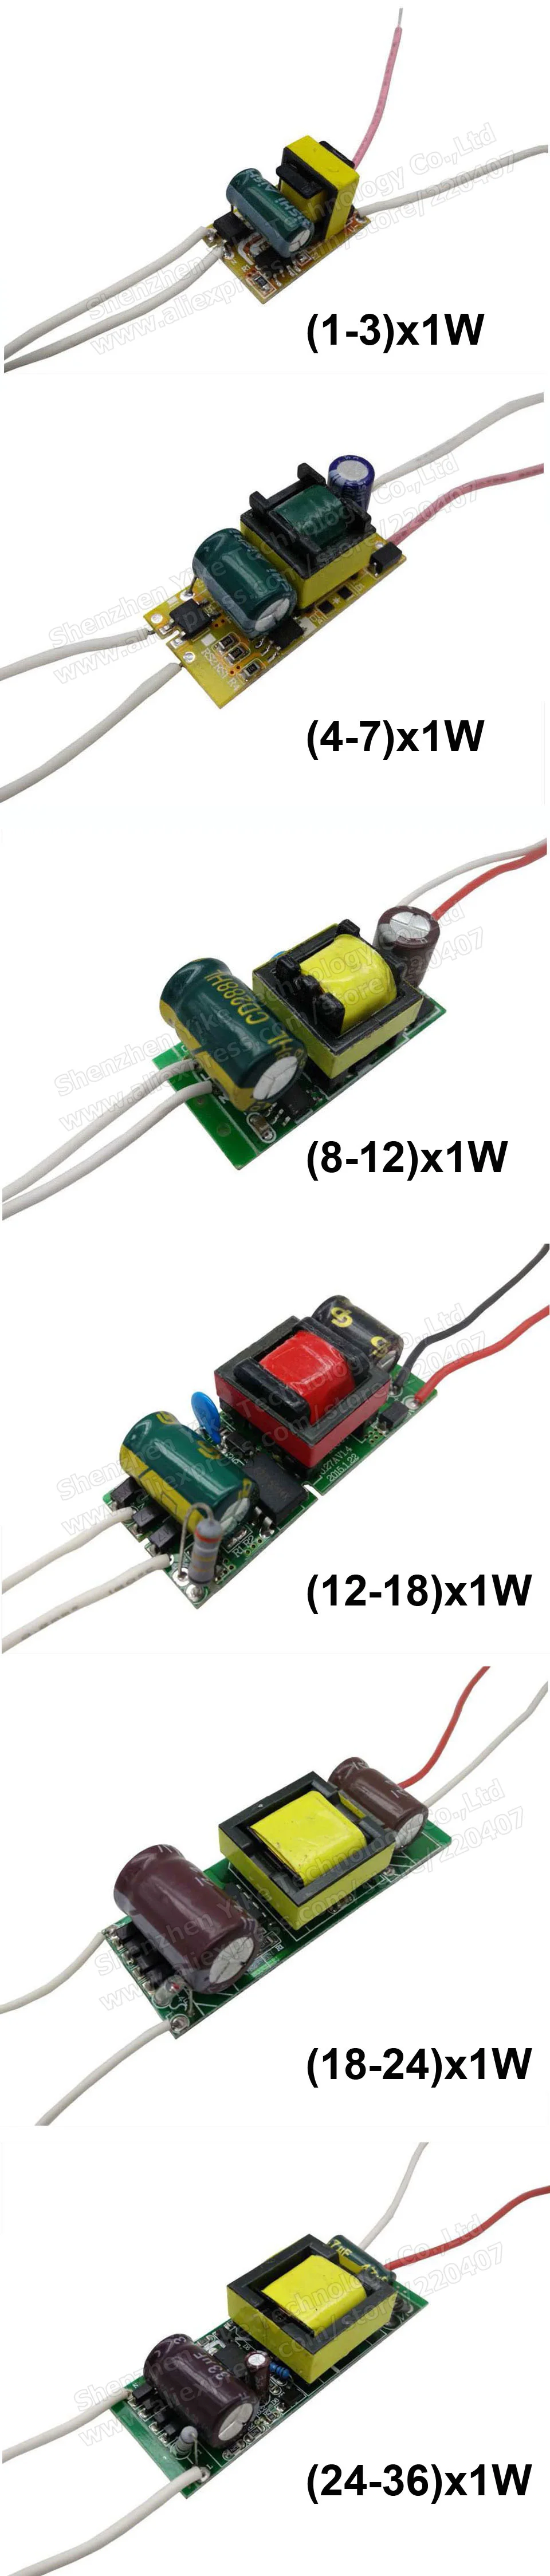 2 шт. 1-36 Вт Светодиодный драйвер входной AC85-265V источник питания встроенный постоянный ток 300 мА Трансформаторы освещения для Светодиодный Blub лампы DIY